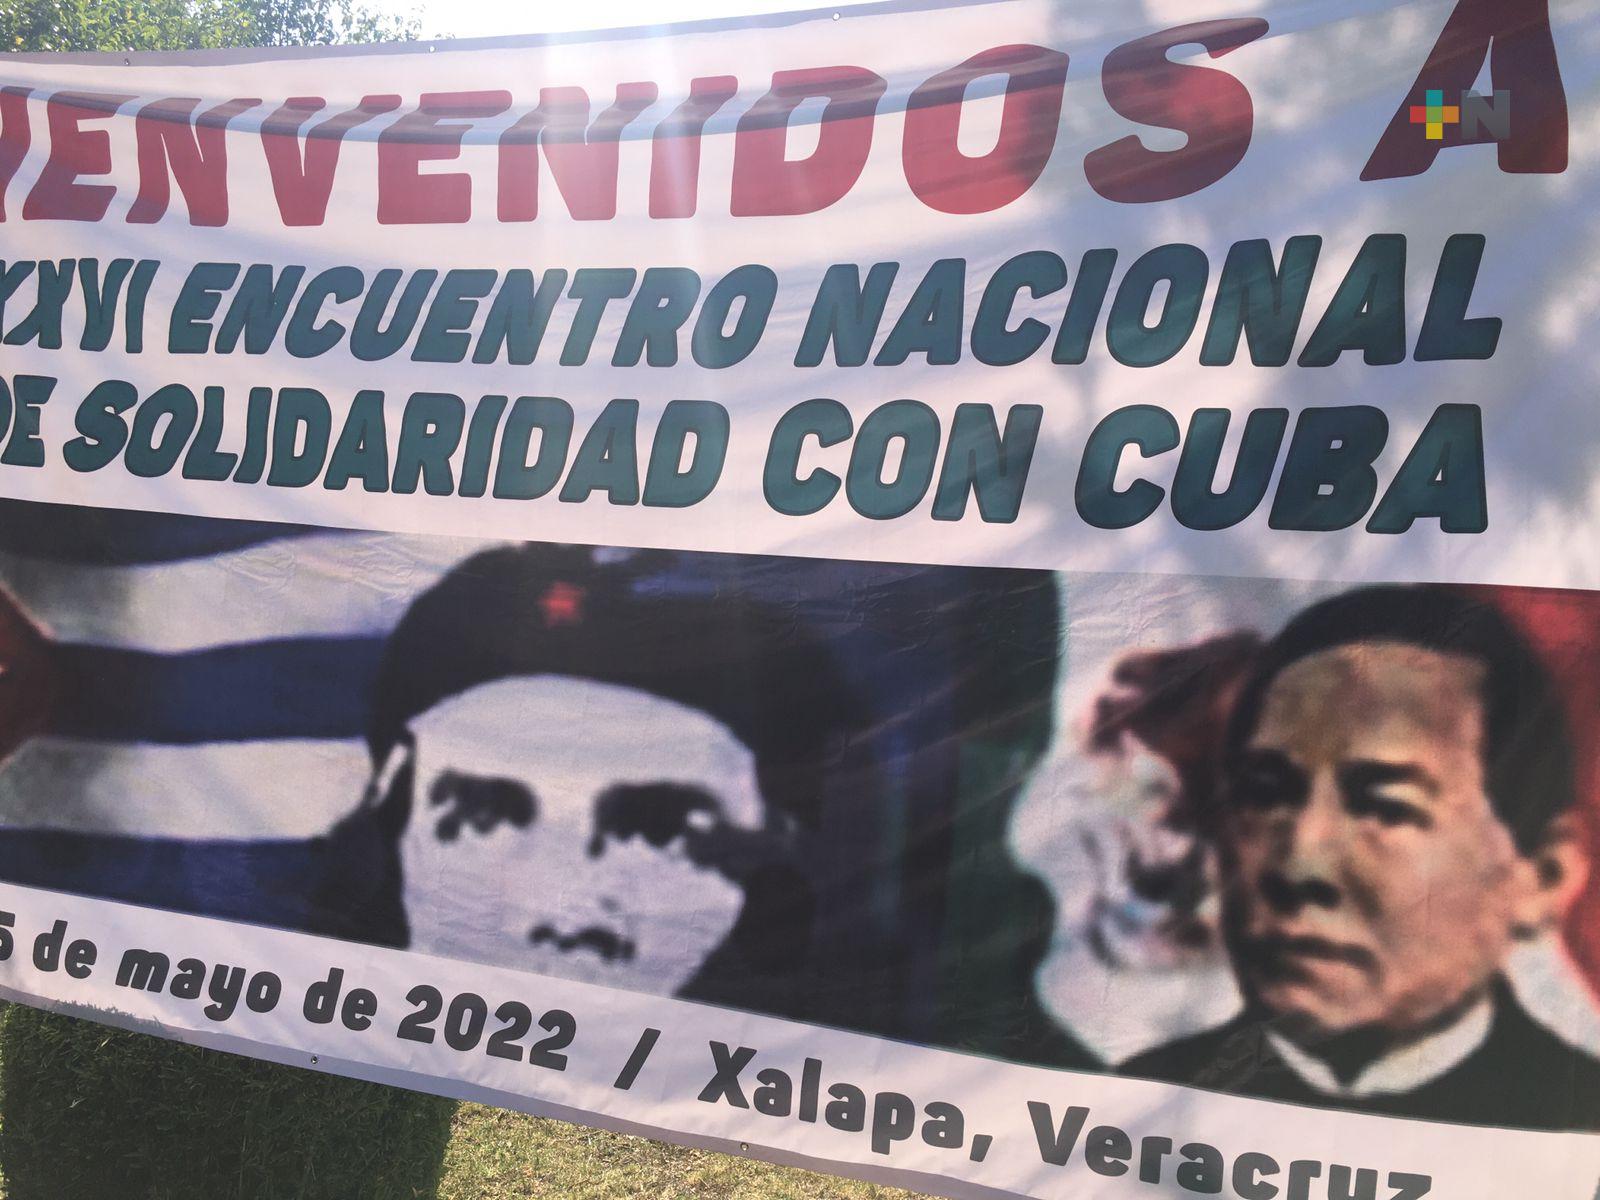 Finaliza Encuentro Nacional de Solidaridad con Cuba, en Xalapa